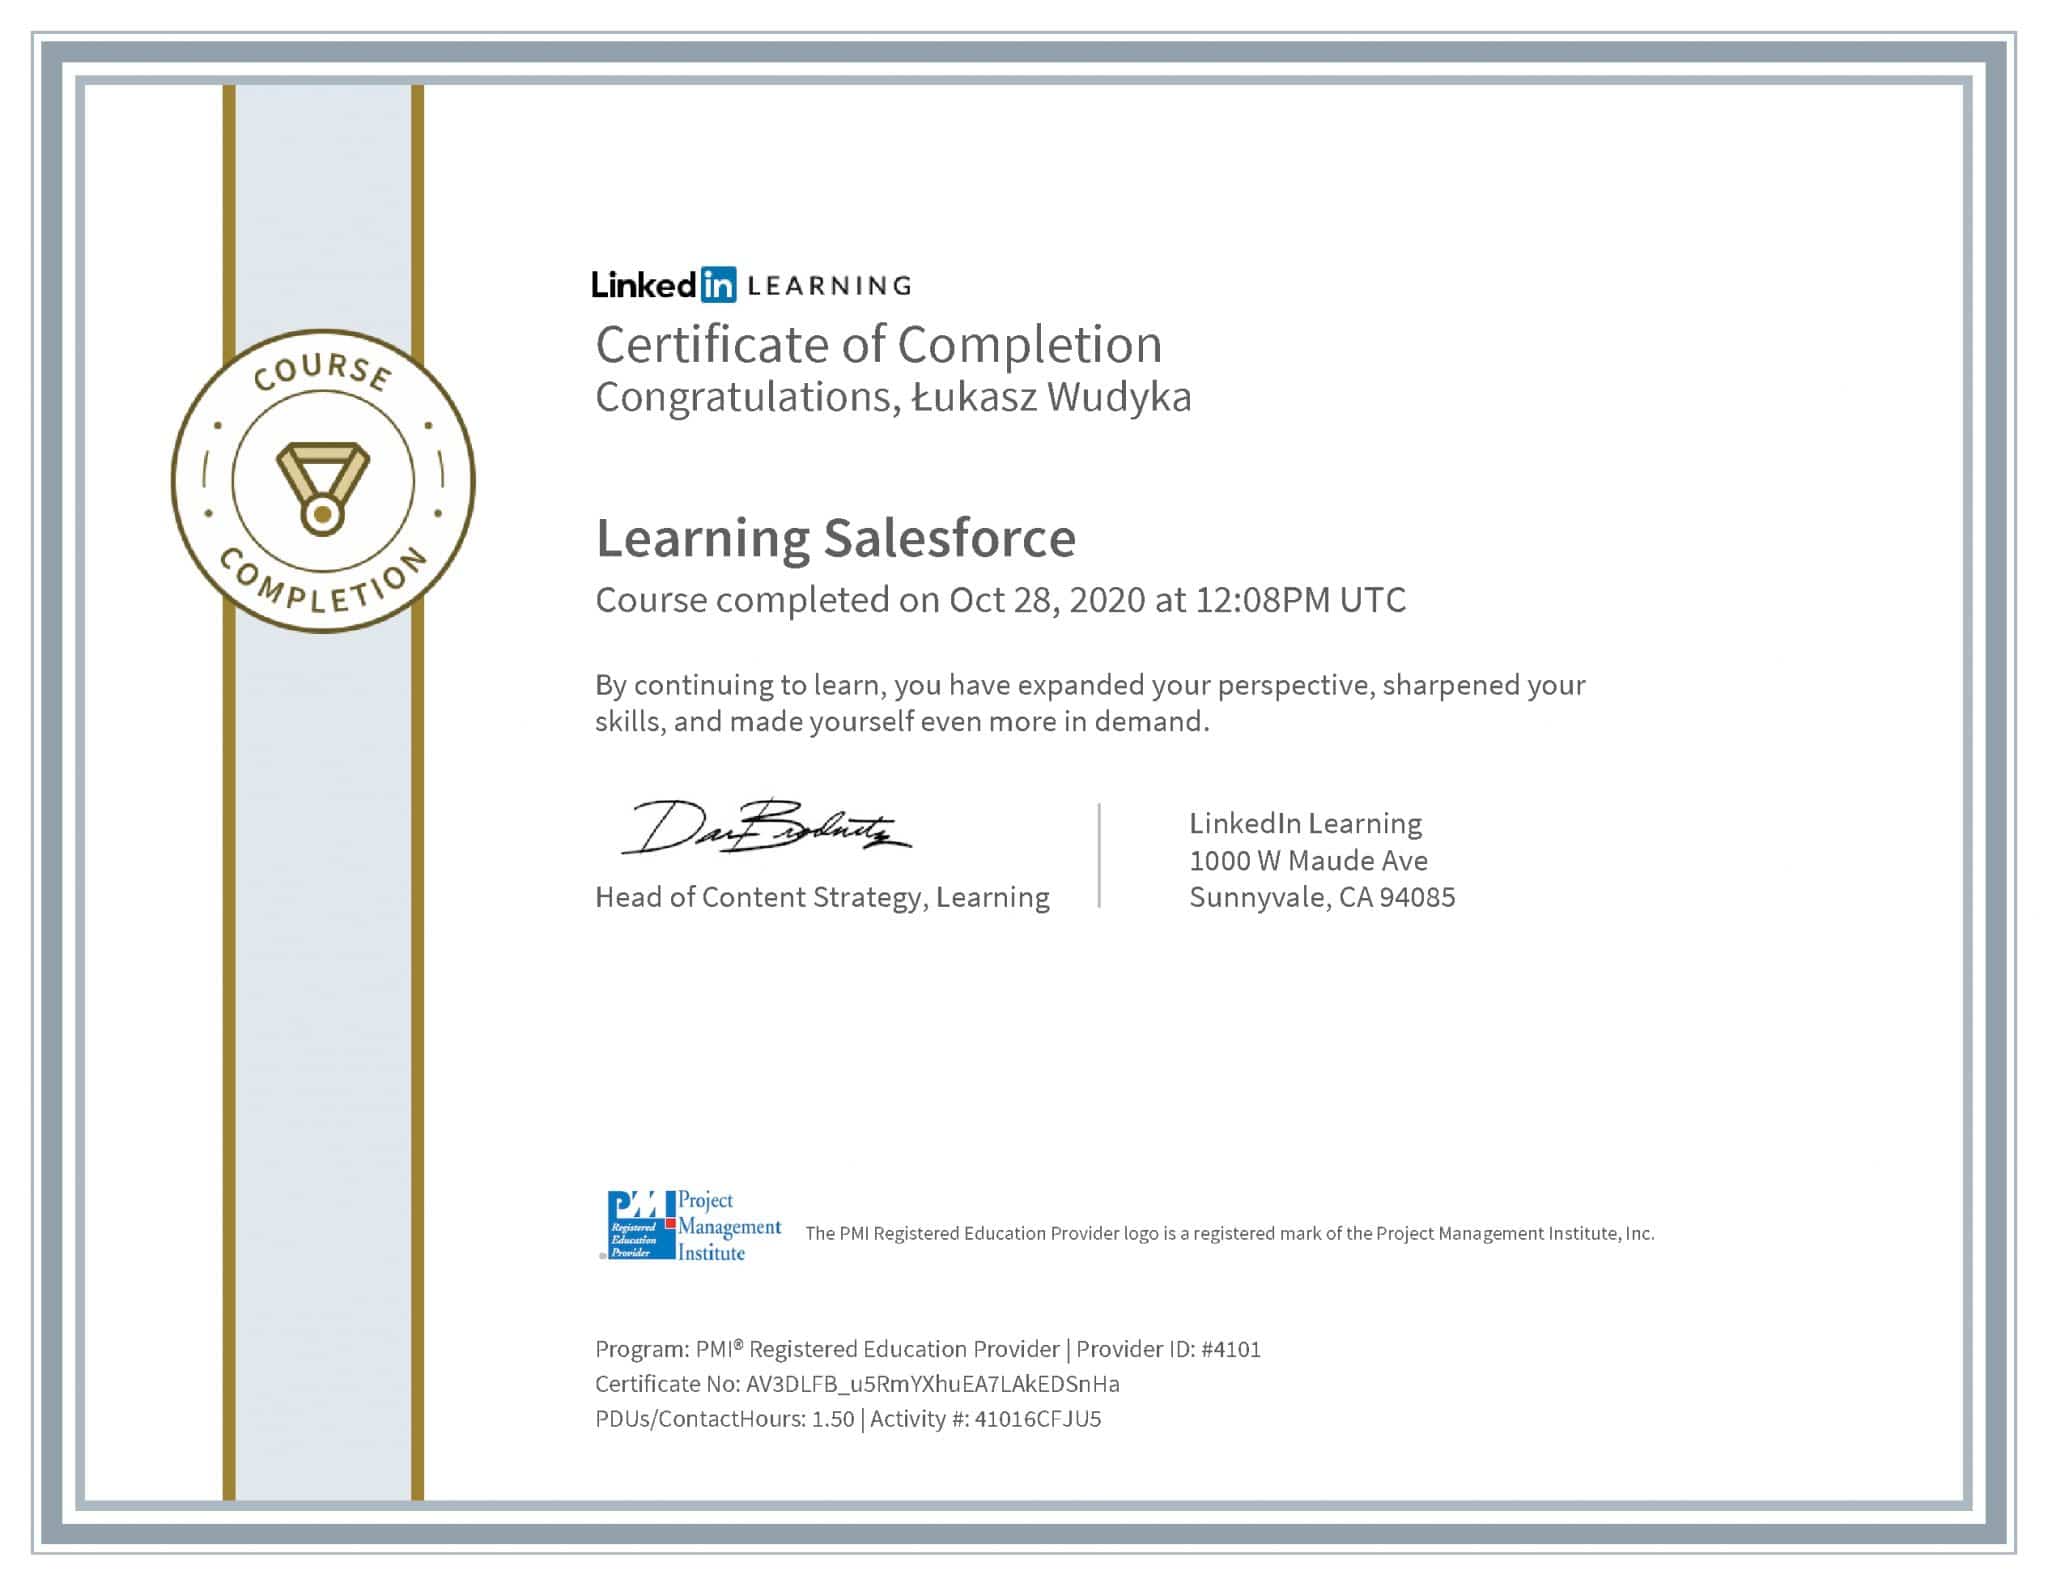 Łukasz Wudyka certyfikat LinkedIn Learning Salesforce PMI